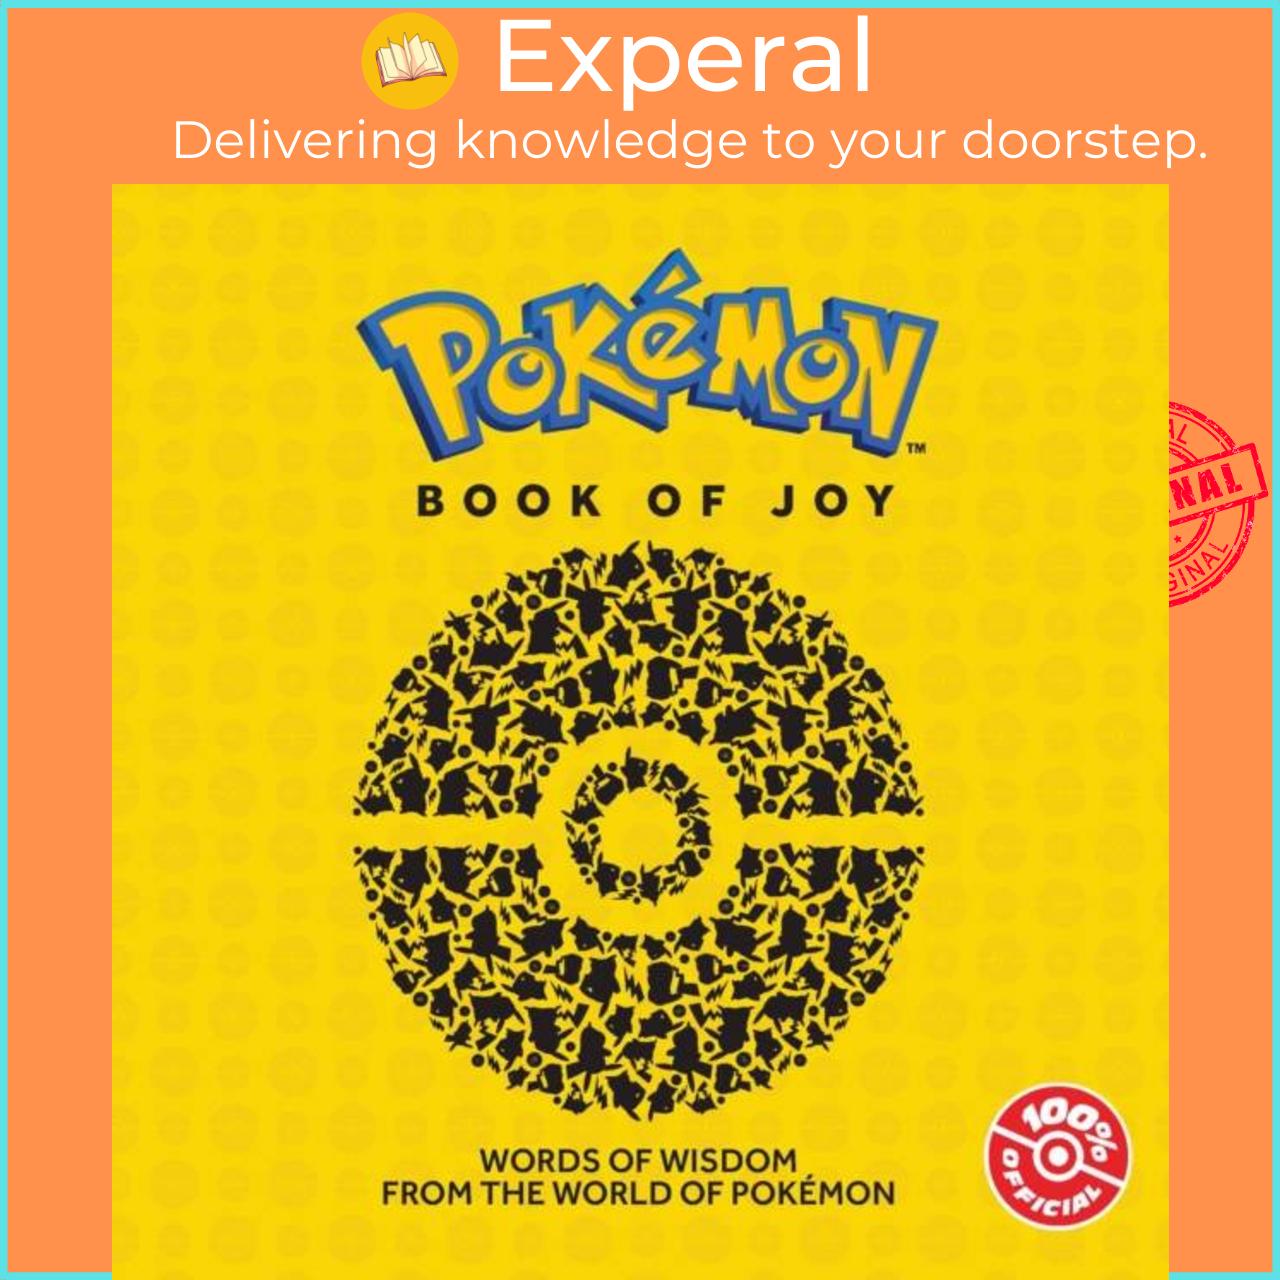 Sách - Pokemon: Book of Joy by Pokemon (UK edition, hardcover)